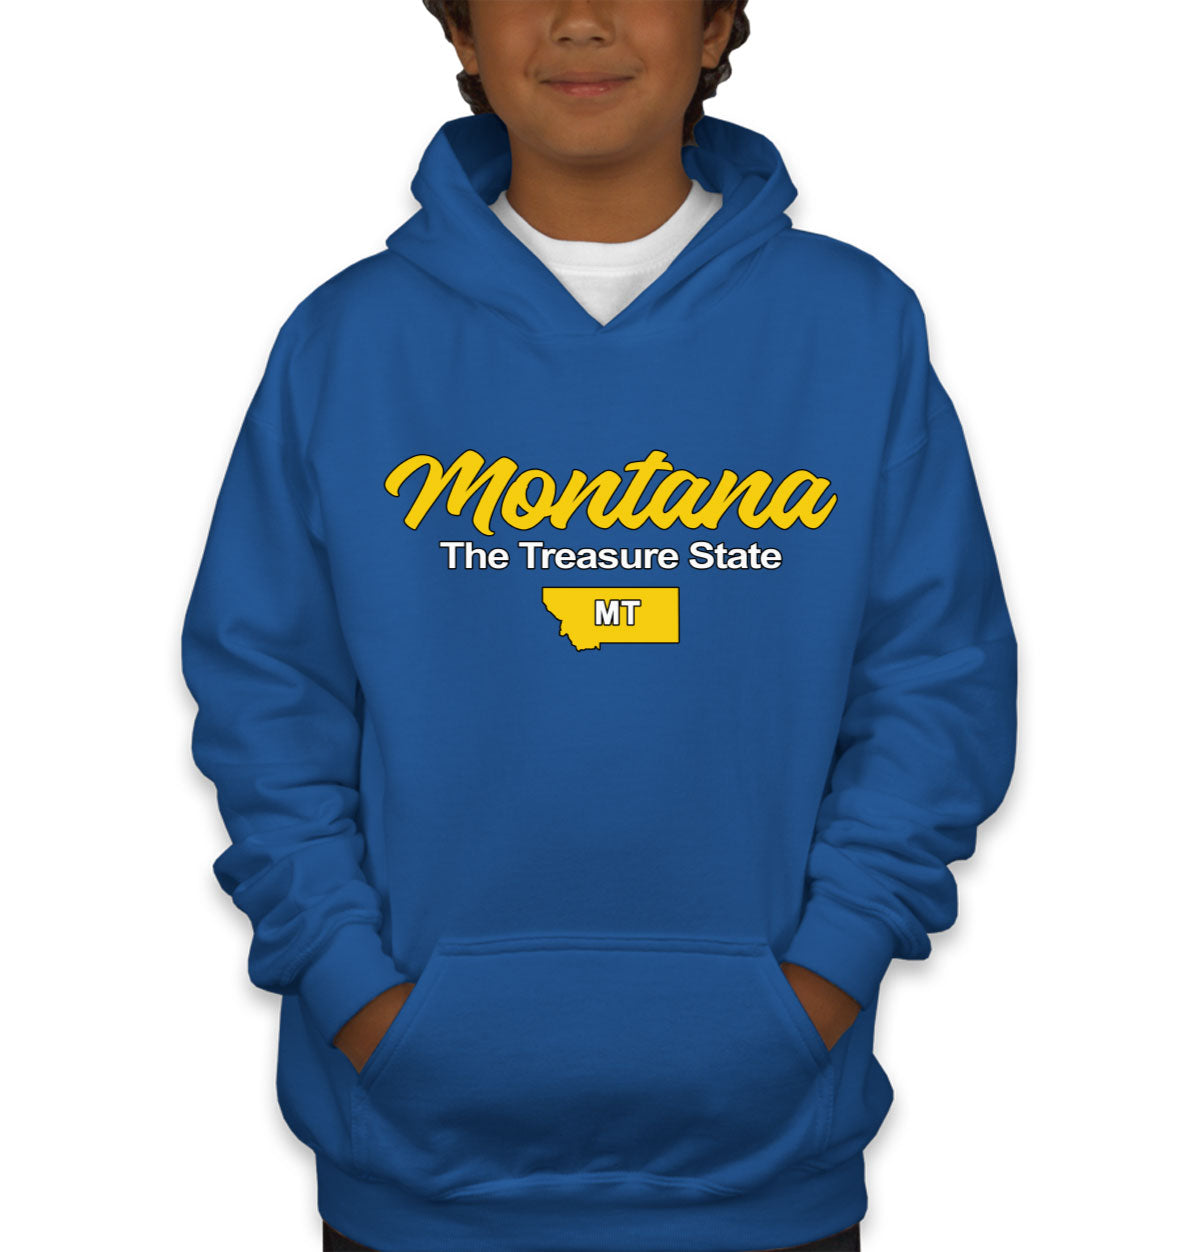 Montana The Treasure State Youth Hoodie